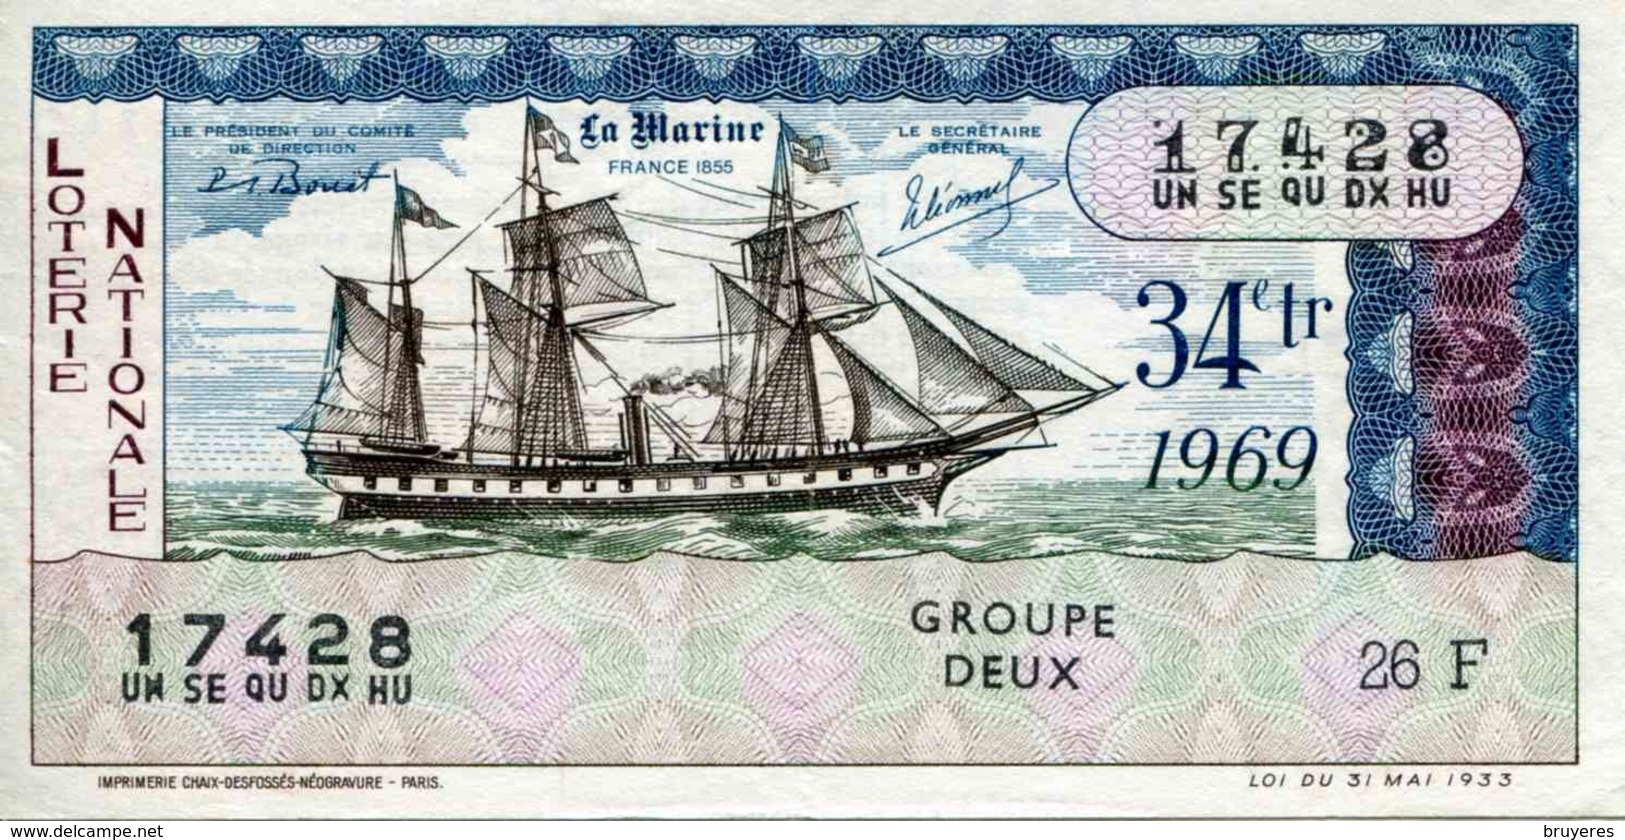 BILLET DE LOTERIE De 1969 Sur Le Thème "La Marine : FRANCE 1855" - Billets De Loterie